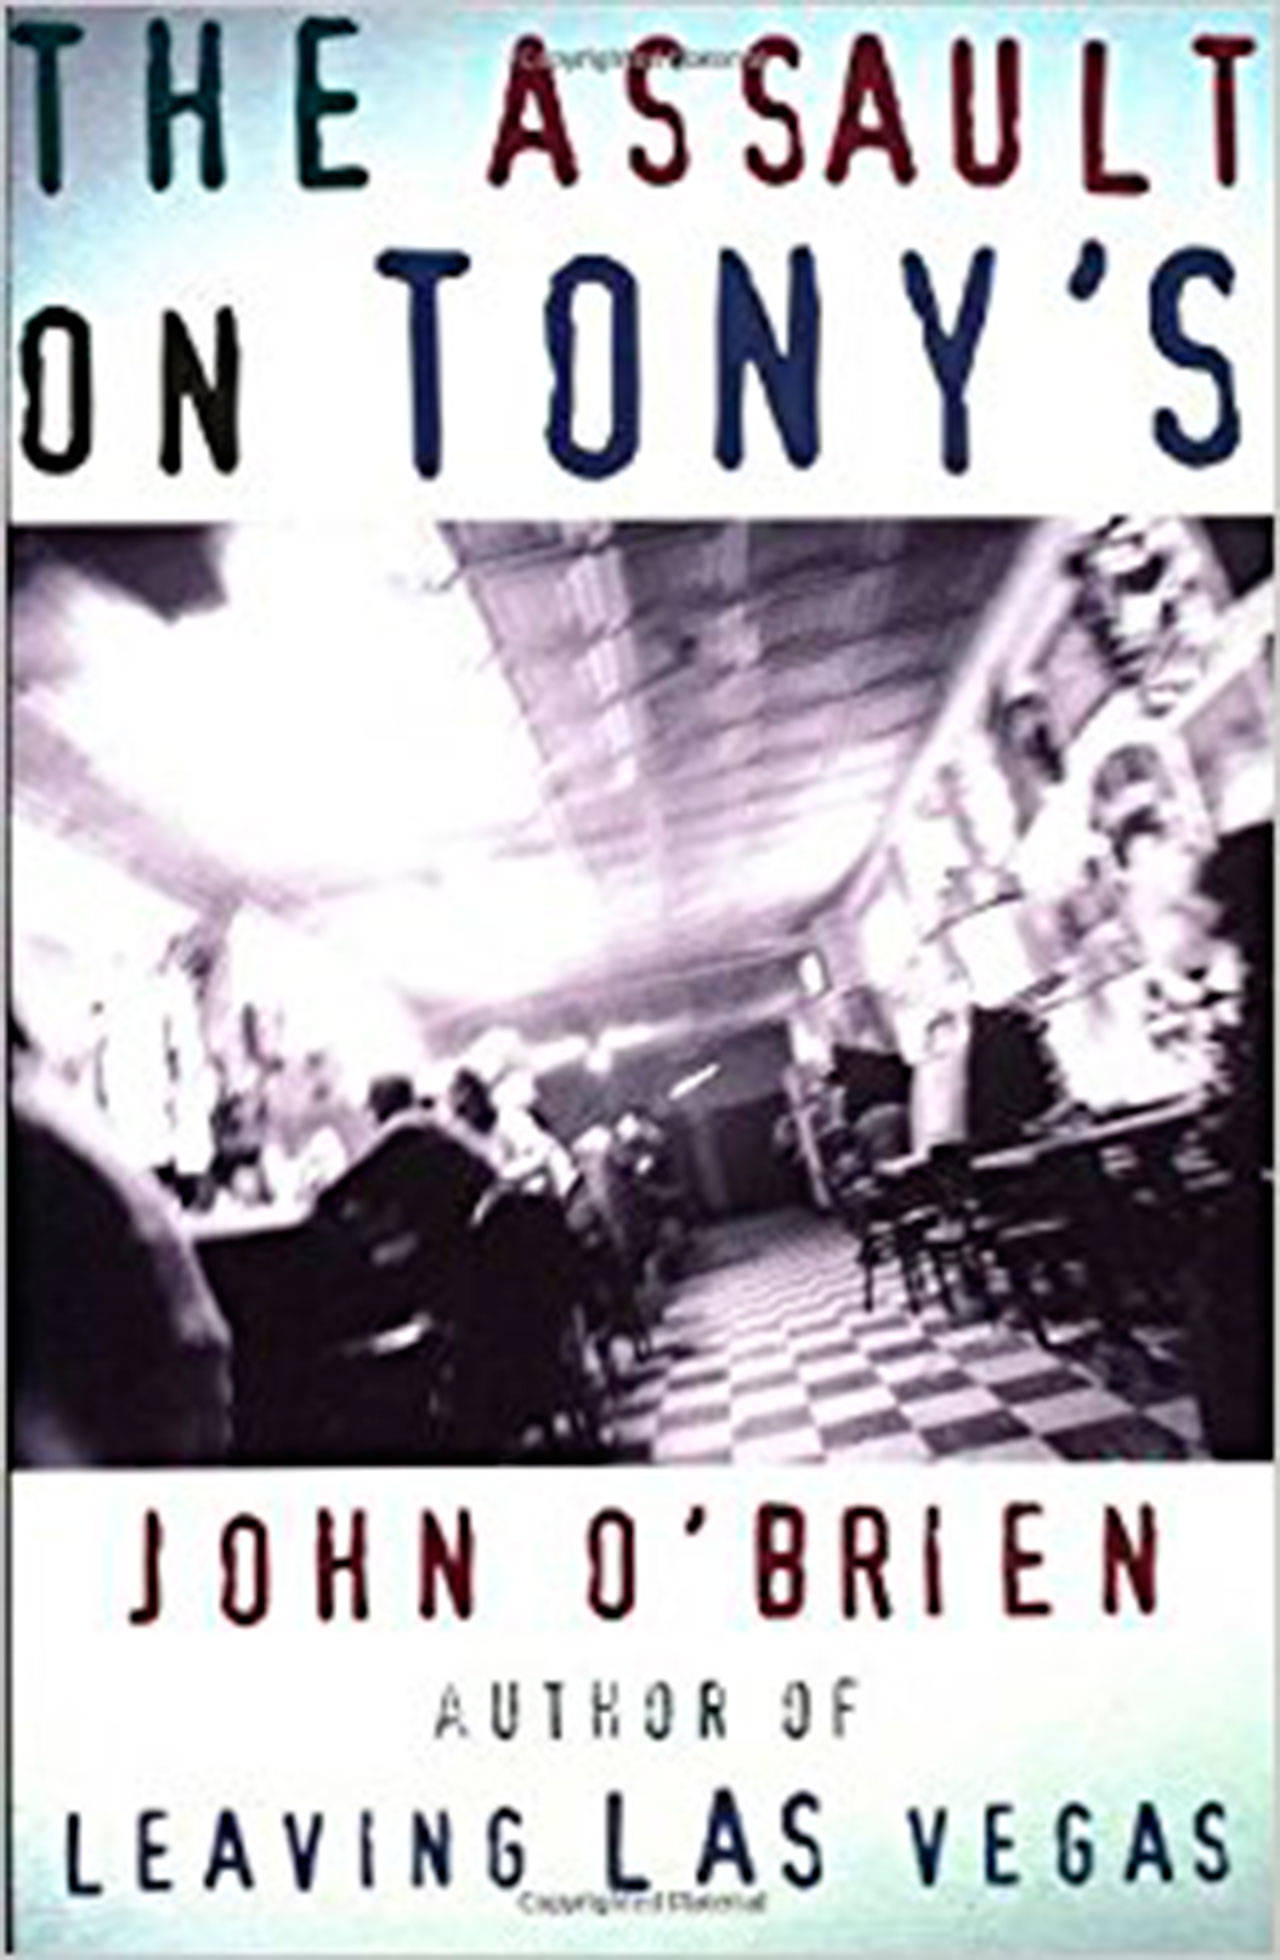 “The Assault on Tony’s” by John O’Brien